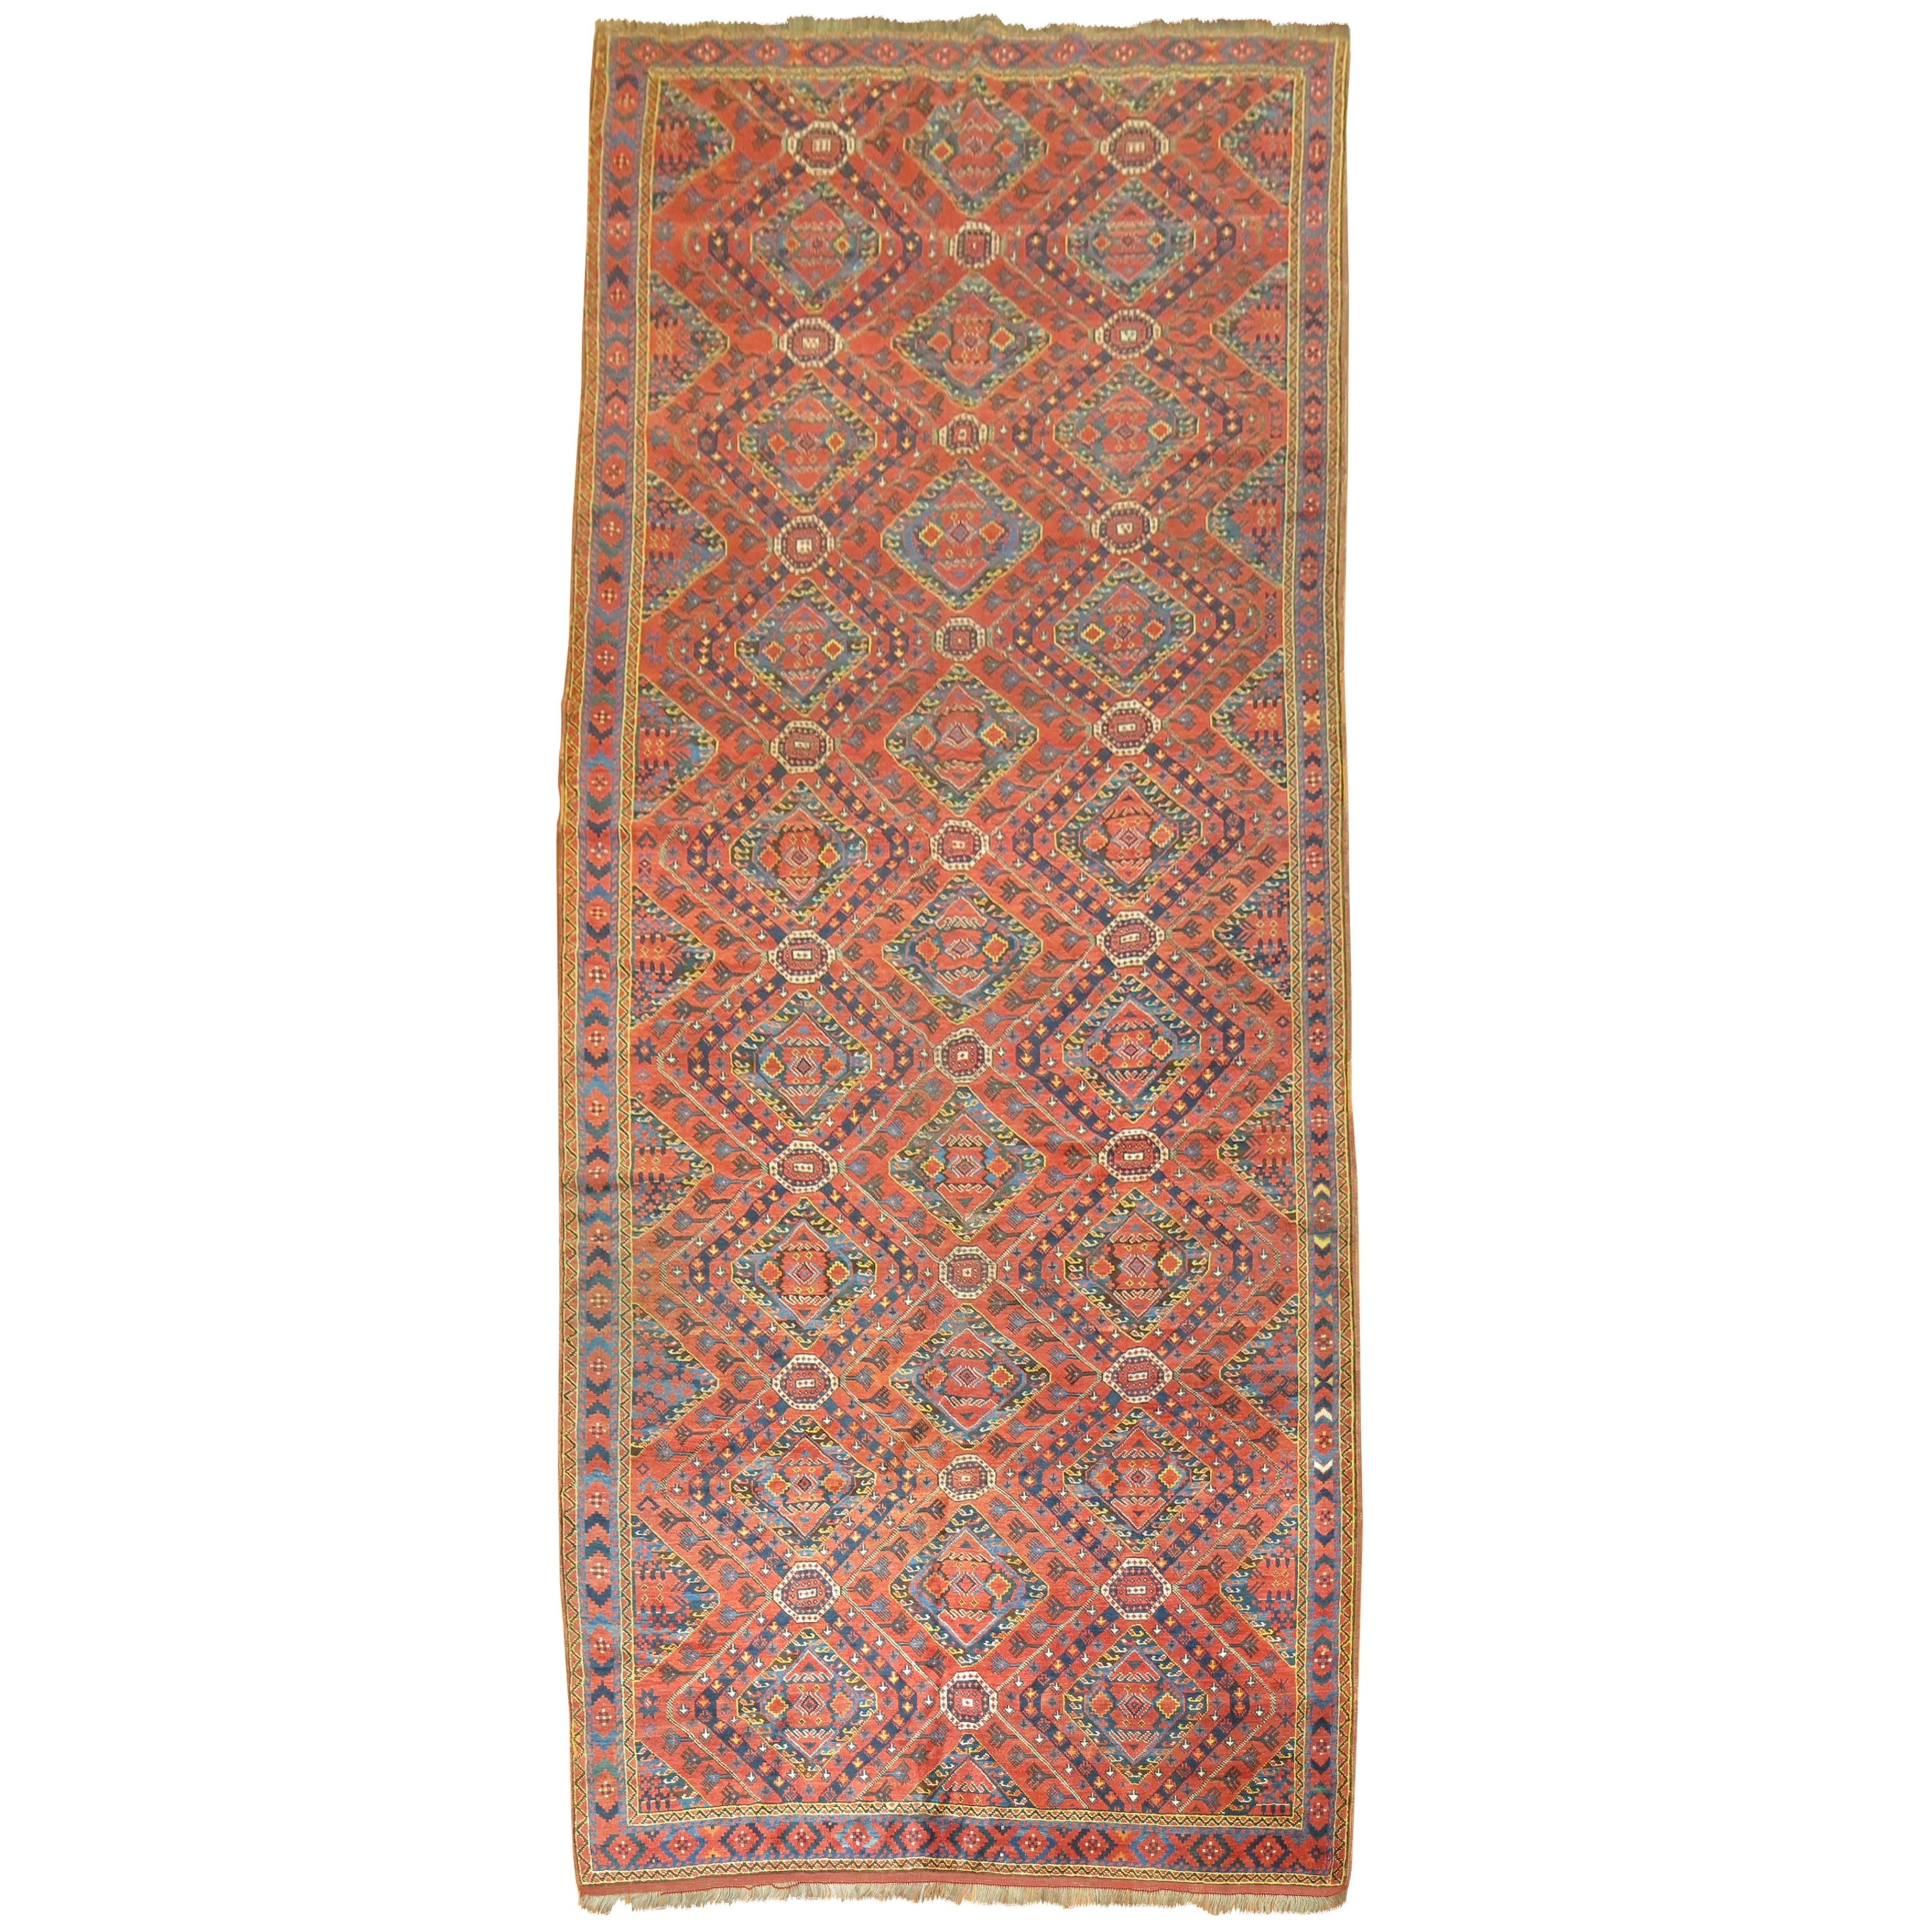 Rustic Gallery SizeAntique Beshir Carpet